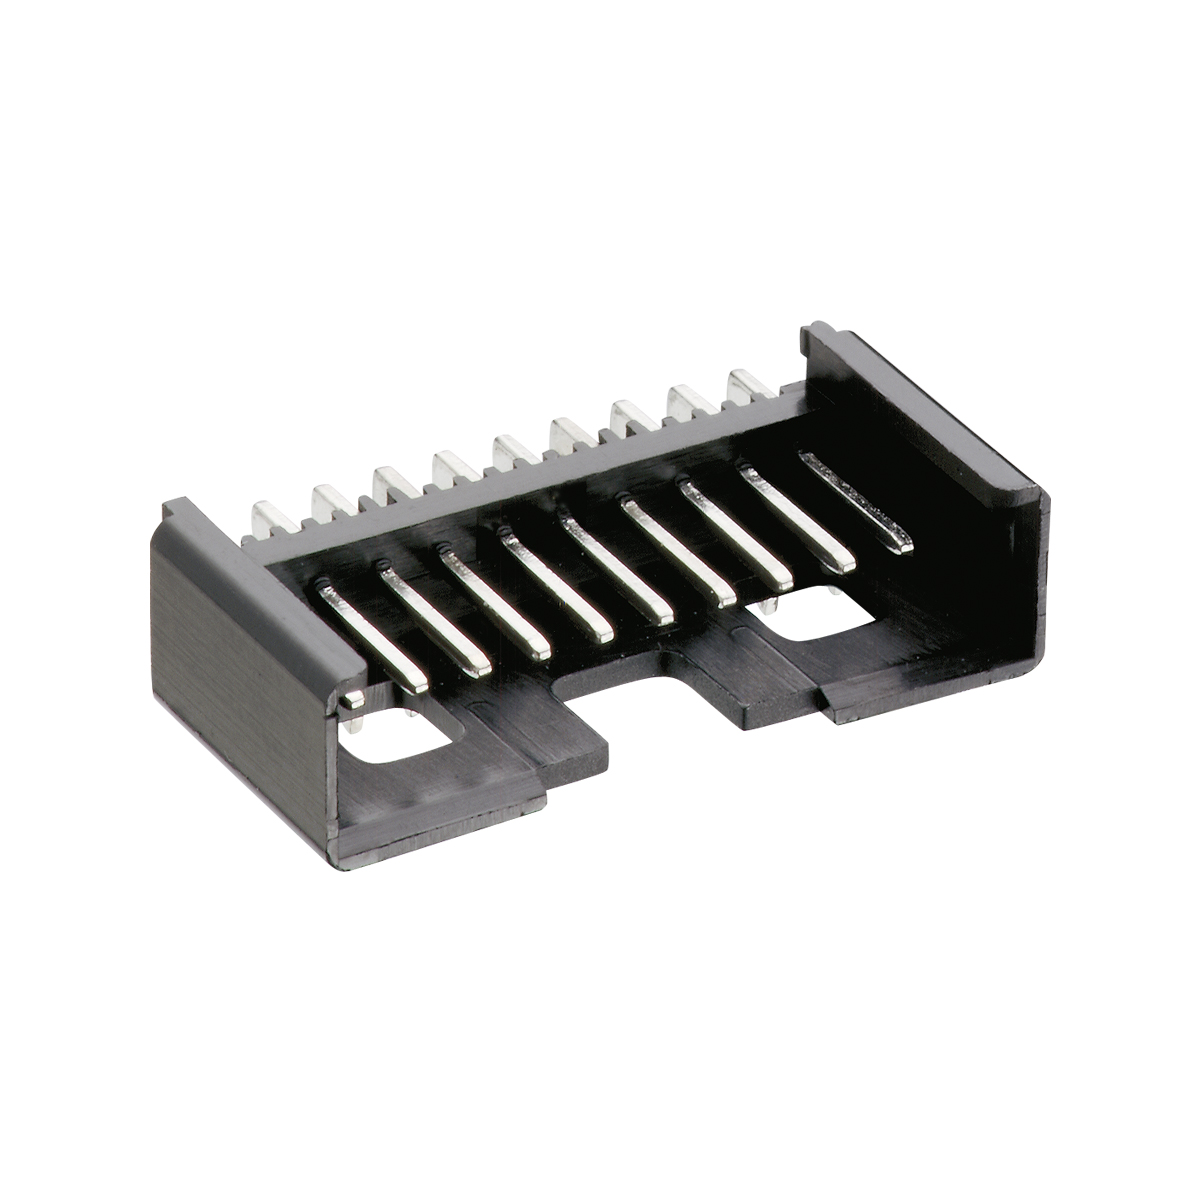 Lumberg: 2,5 MSFW/O (Řada 31 | Minimodul™ konektory, rozteč 2.5 mm )